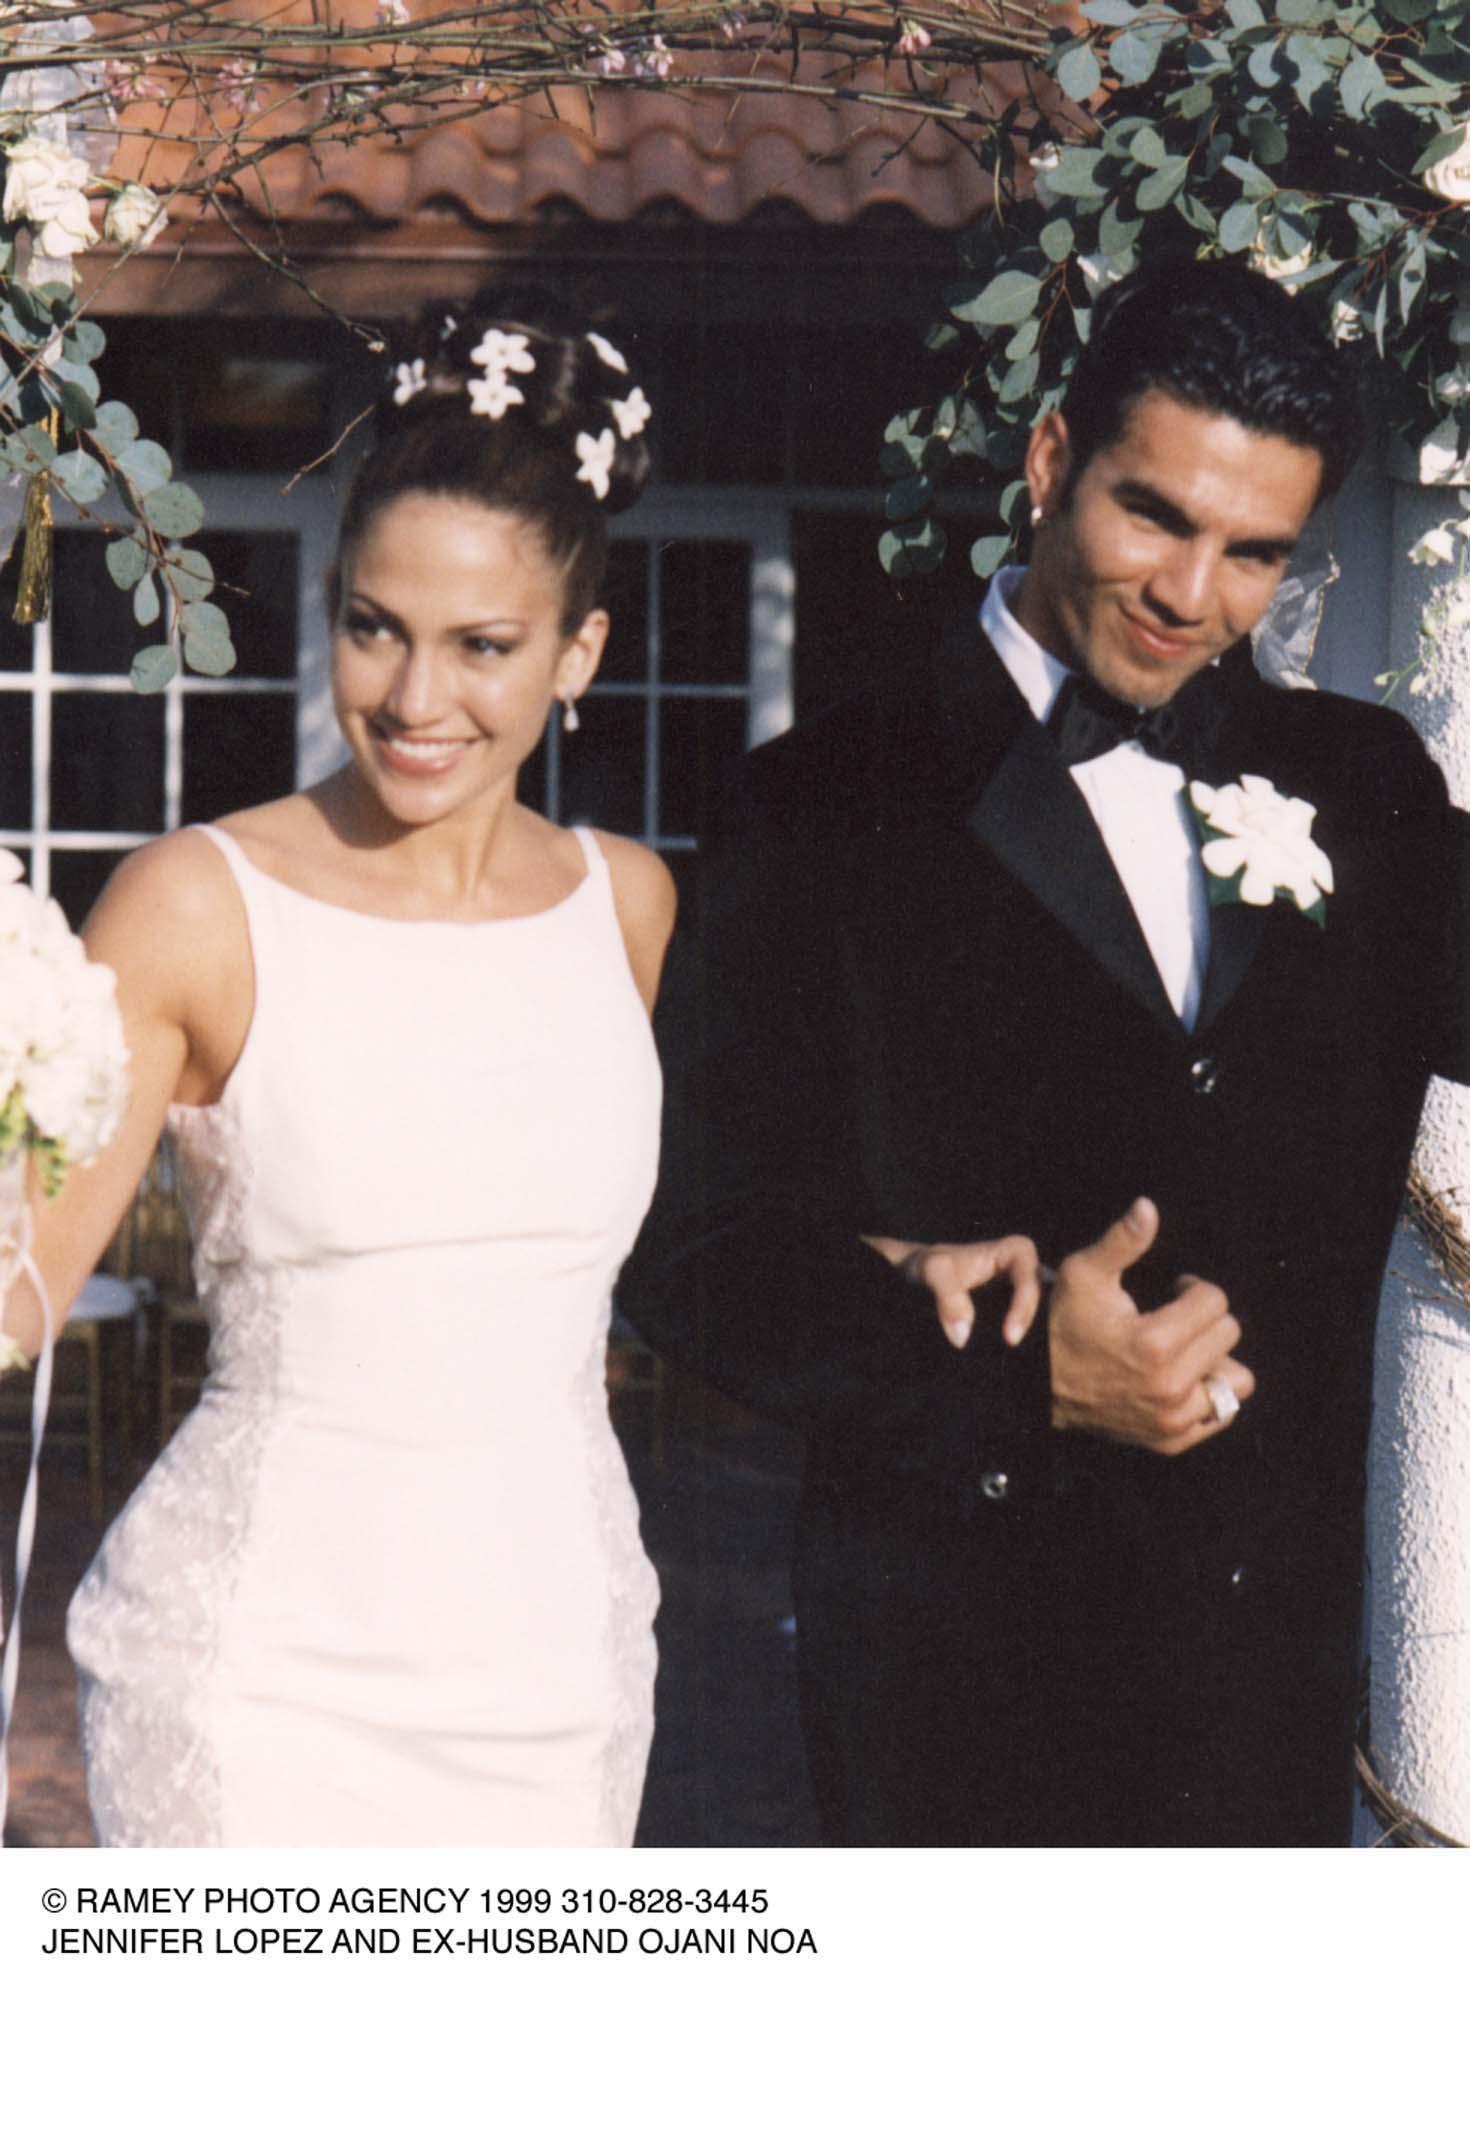 Jennifer Lopez with first husband ojani noa